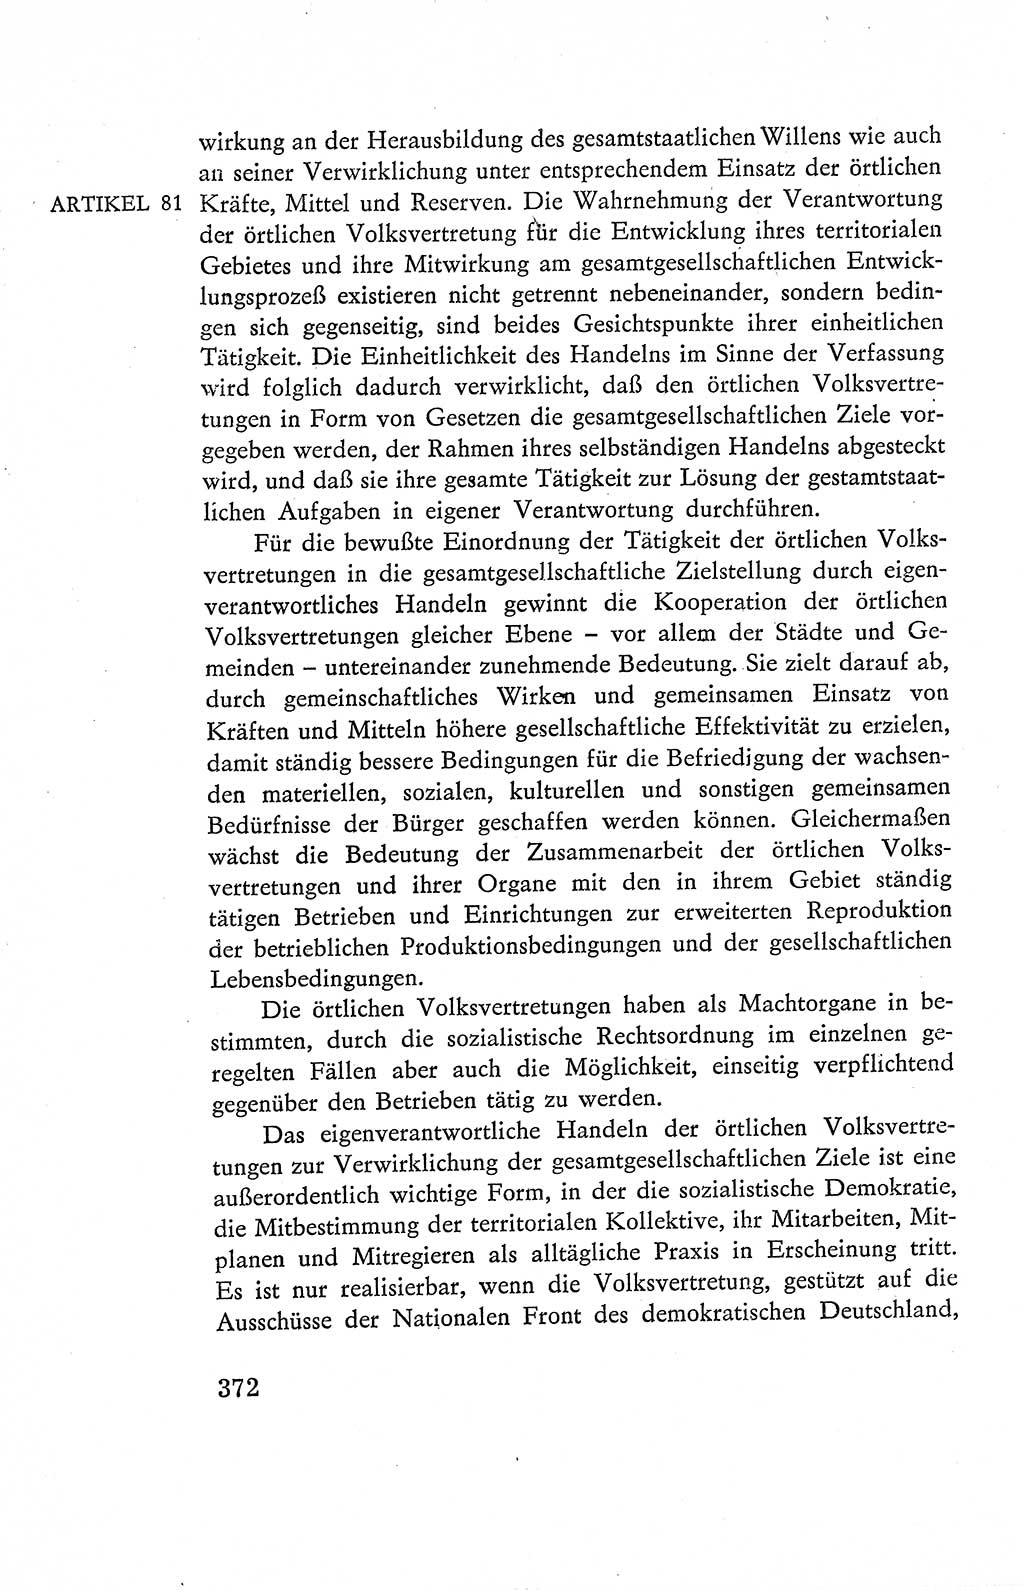 Verfassung der Deutschen Demokratischen Republik (DDR), Dokumente, Kommentar 1969, Band 2, Seite 372 (Verf. DDR Dok. Komm. 1969, Bd. 2, S. 372)